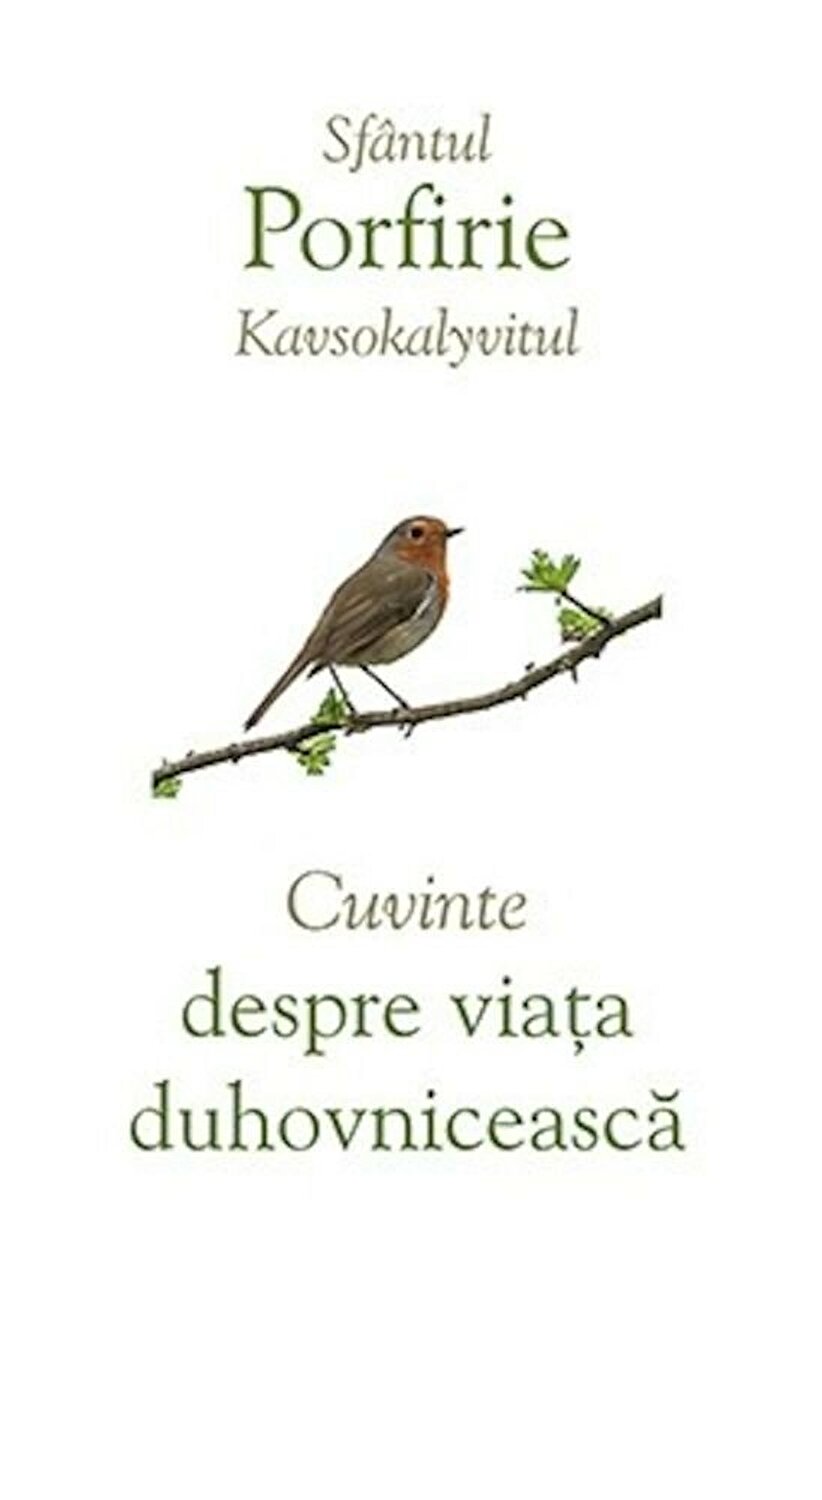 Cuvinte despre viata duhovniceasca | Porfirie Kavsokalyvitul carturesti.ro imagine 2022